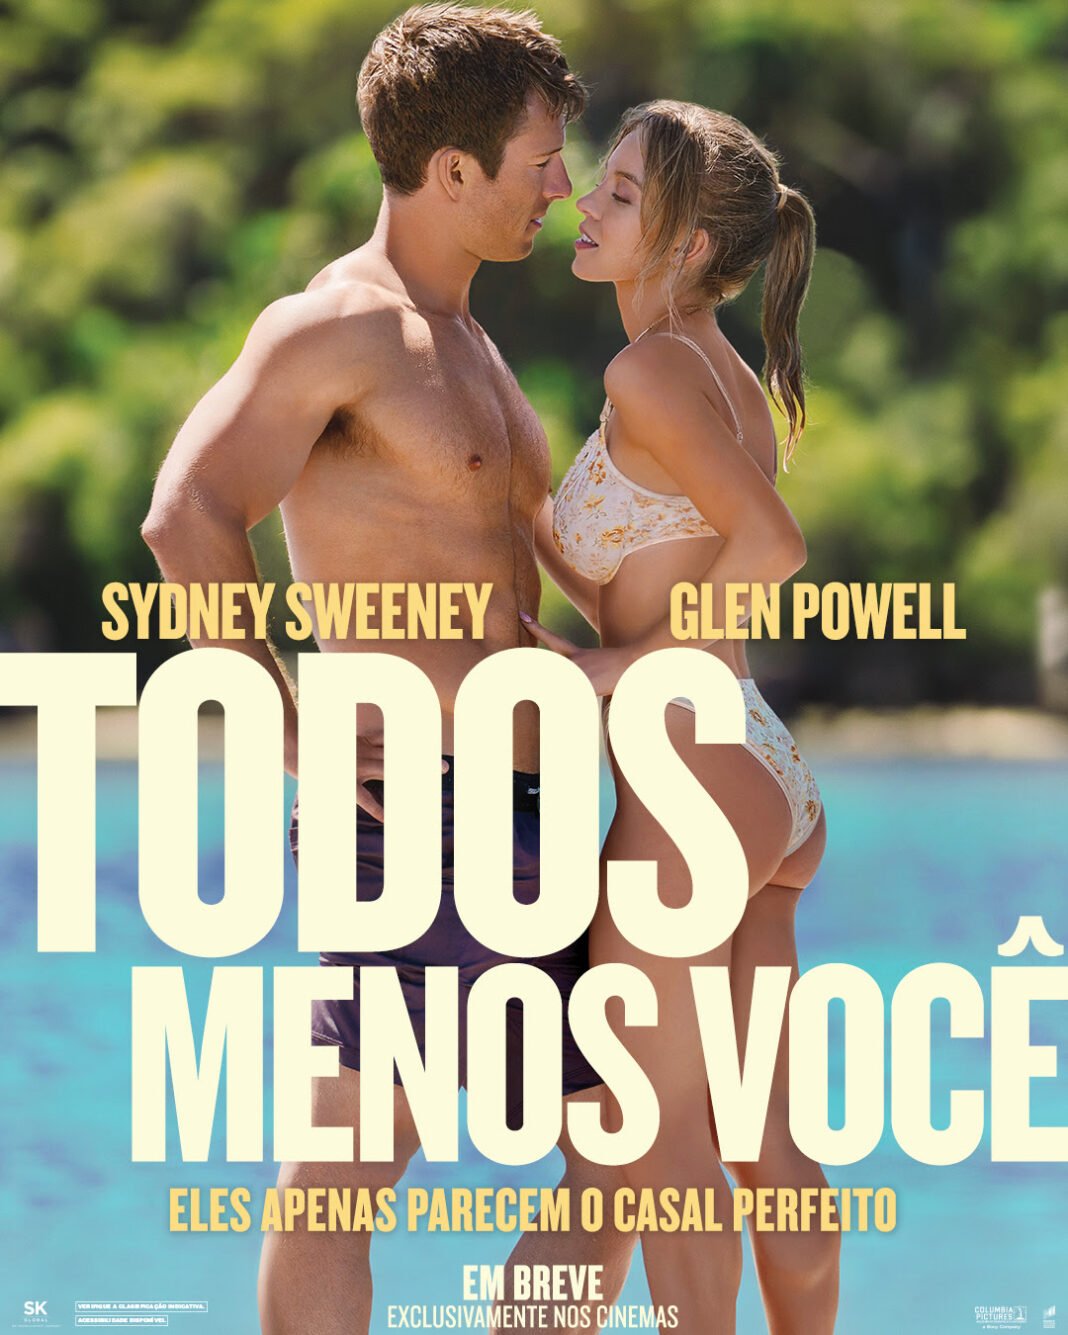 “Todos menos Você”: nova comédia, com Sydney Sweeney e Glen Powell, chega amanhã nos cinemas de todo Brasil